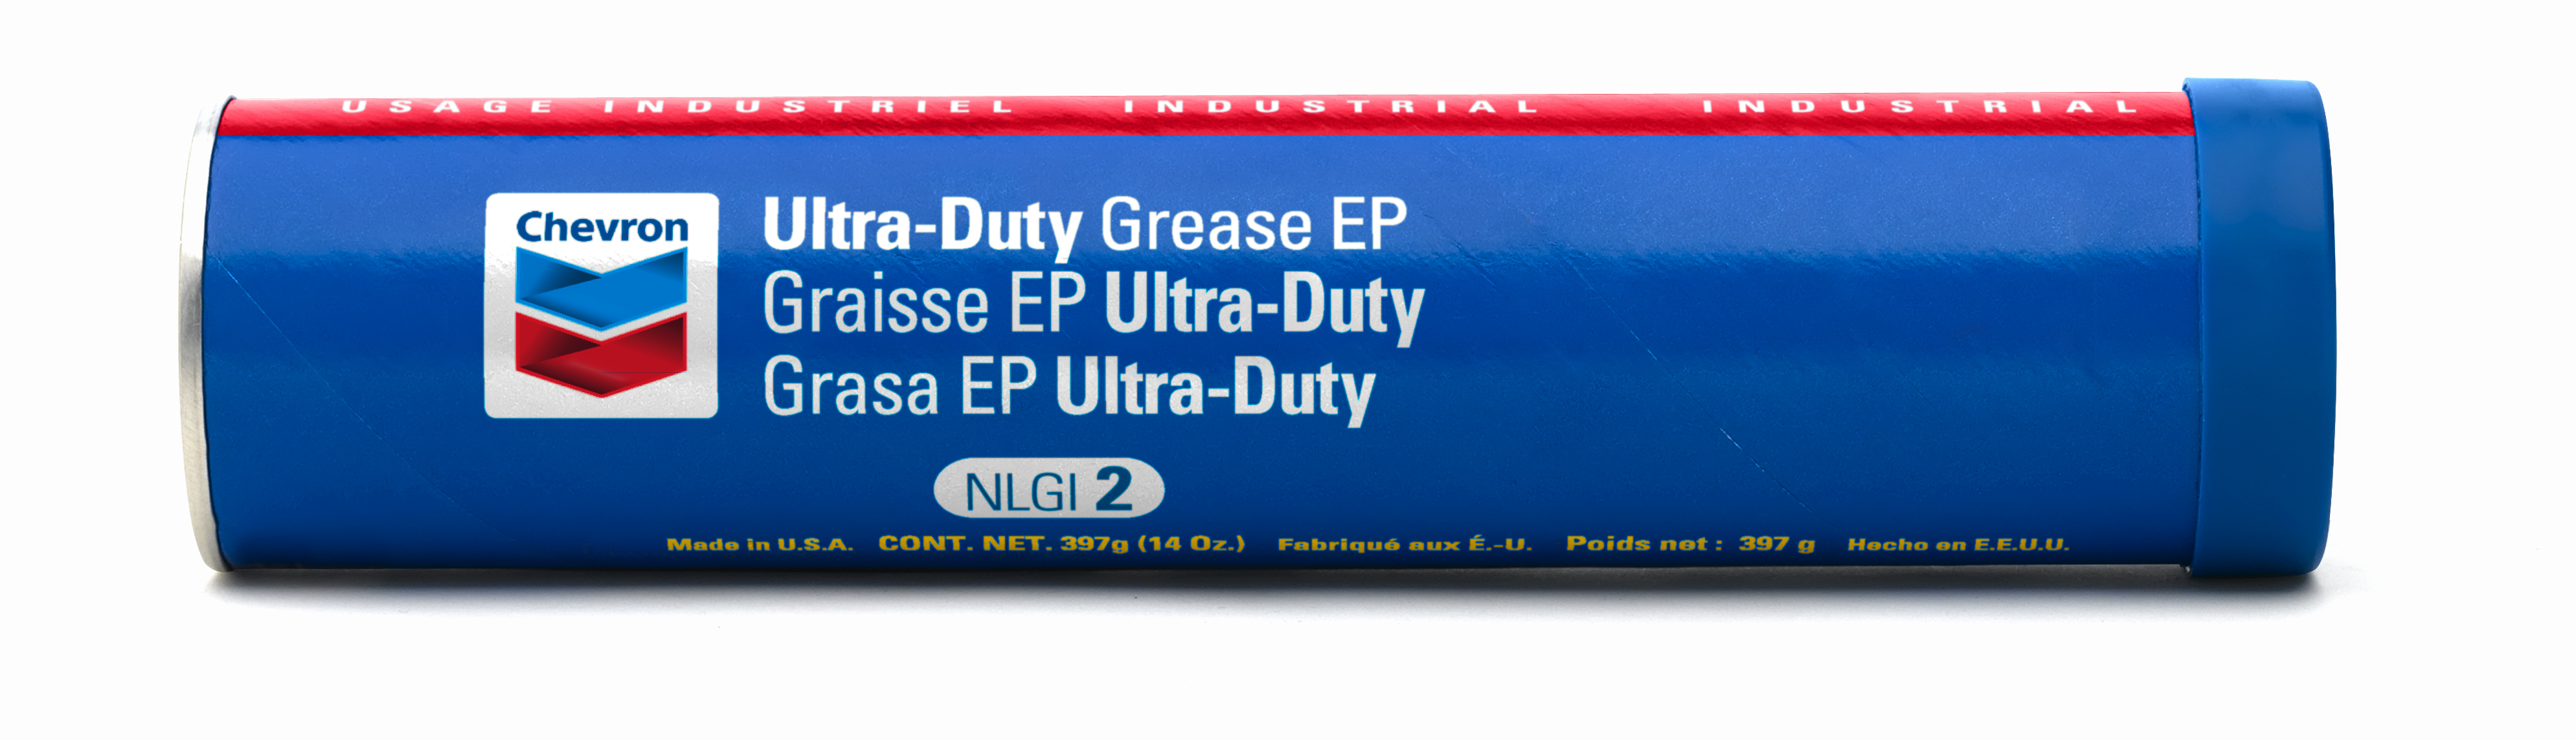 картинка Chevron Ultra-Duty Grease EP - NLGI 2 (397 гр) Пластичная смазка. Артикул: 238011642